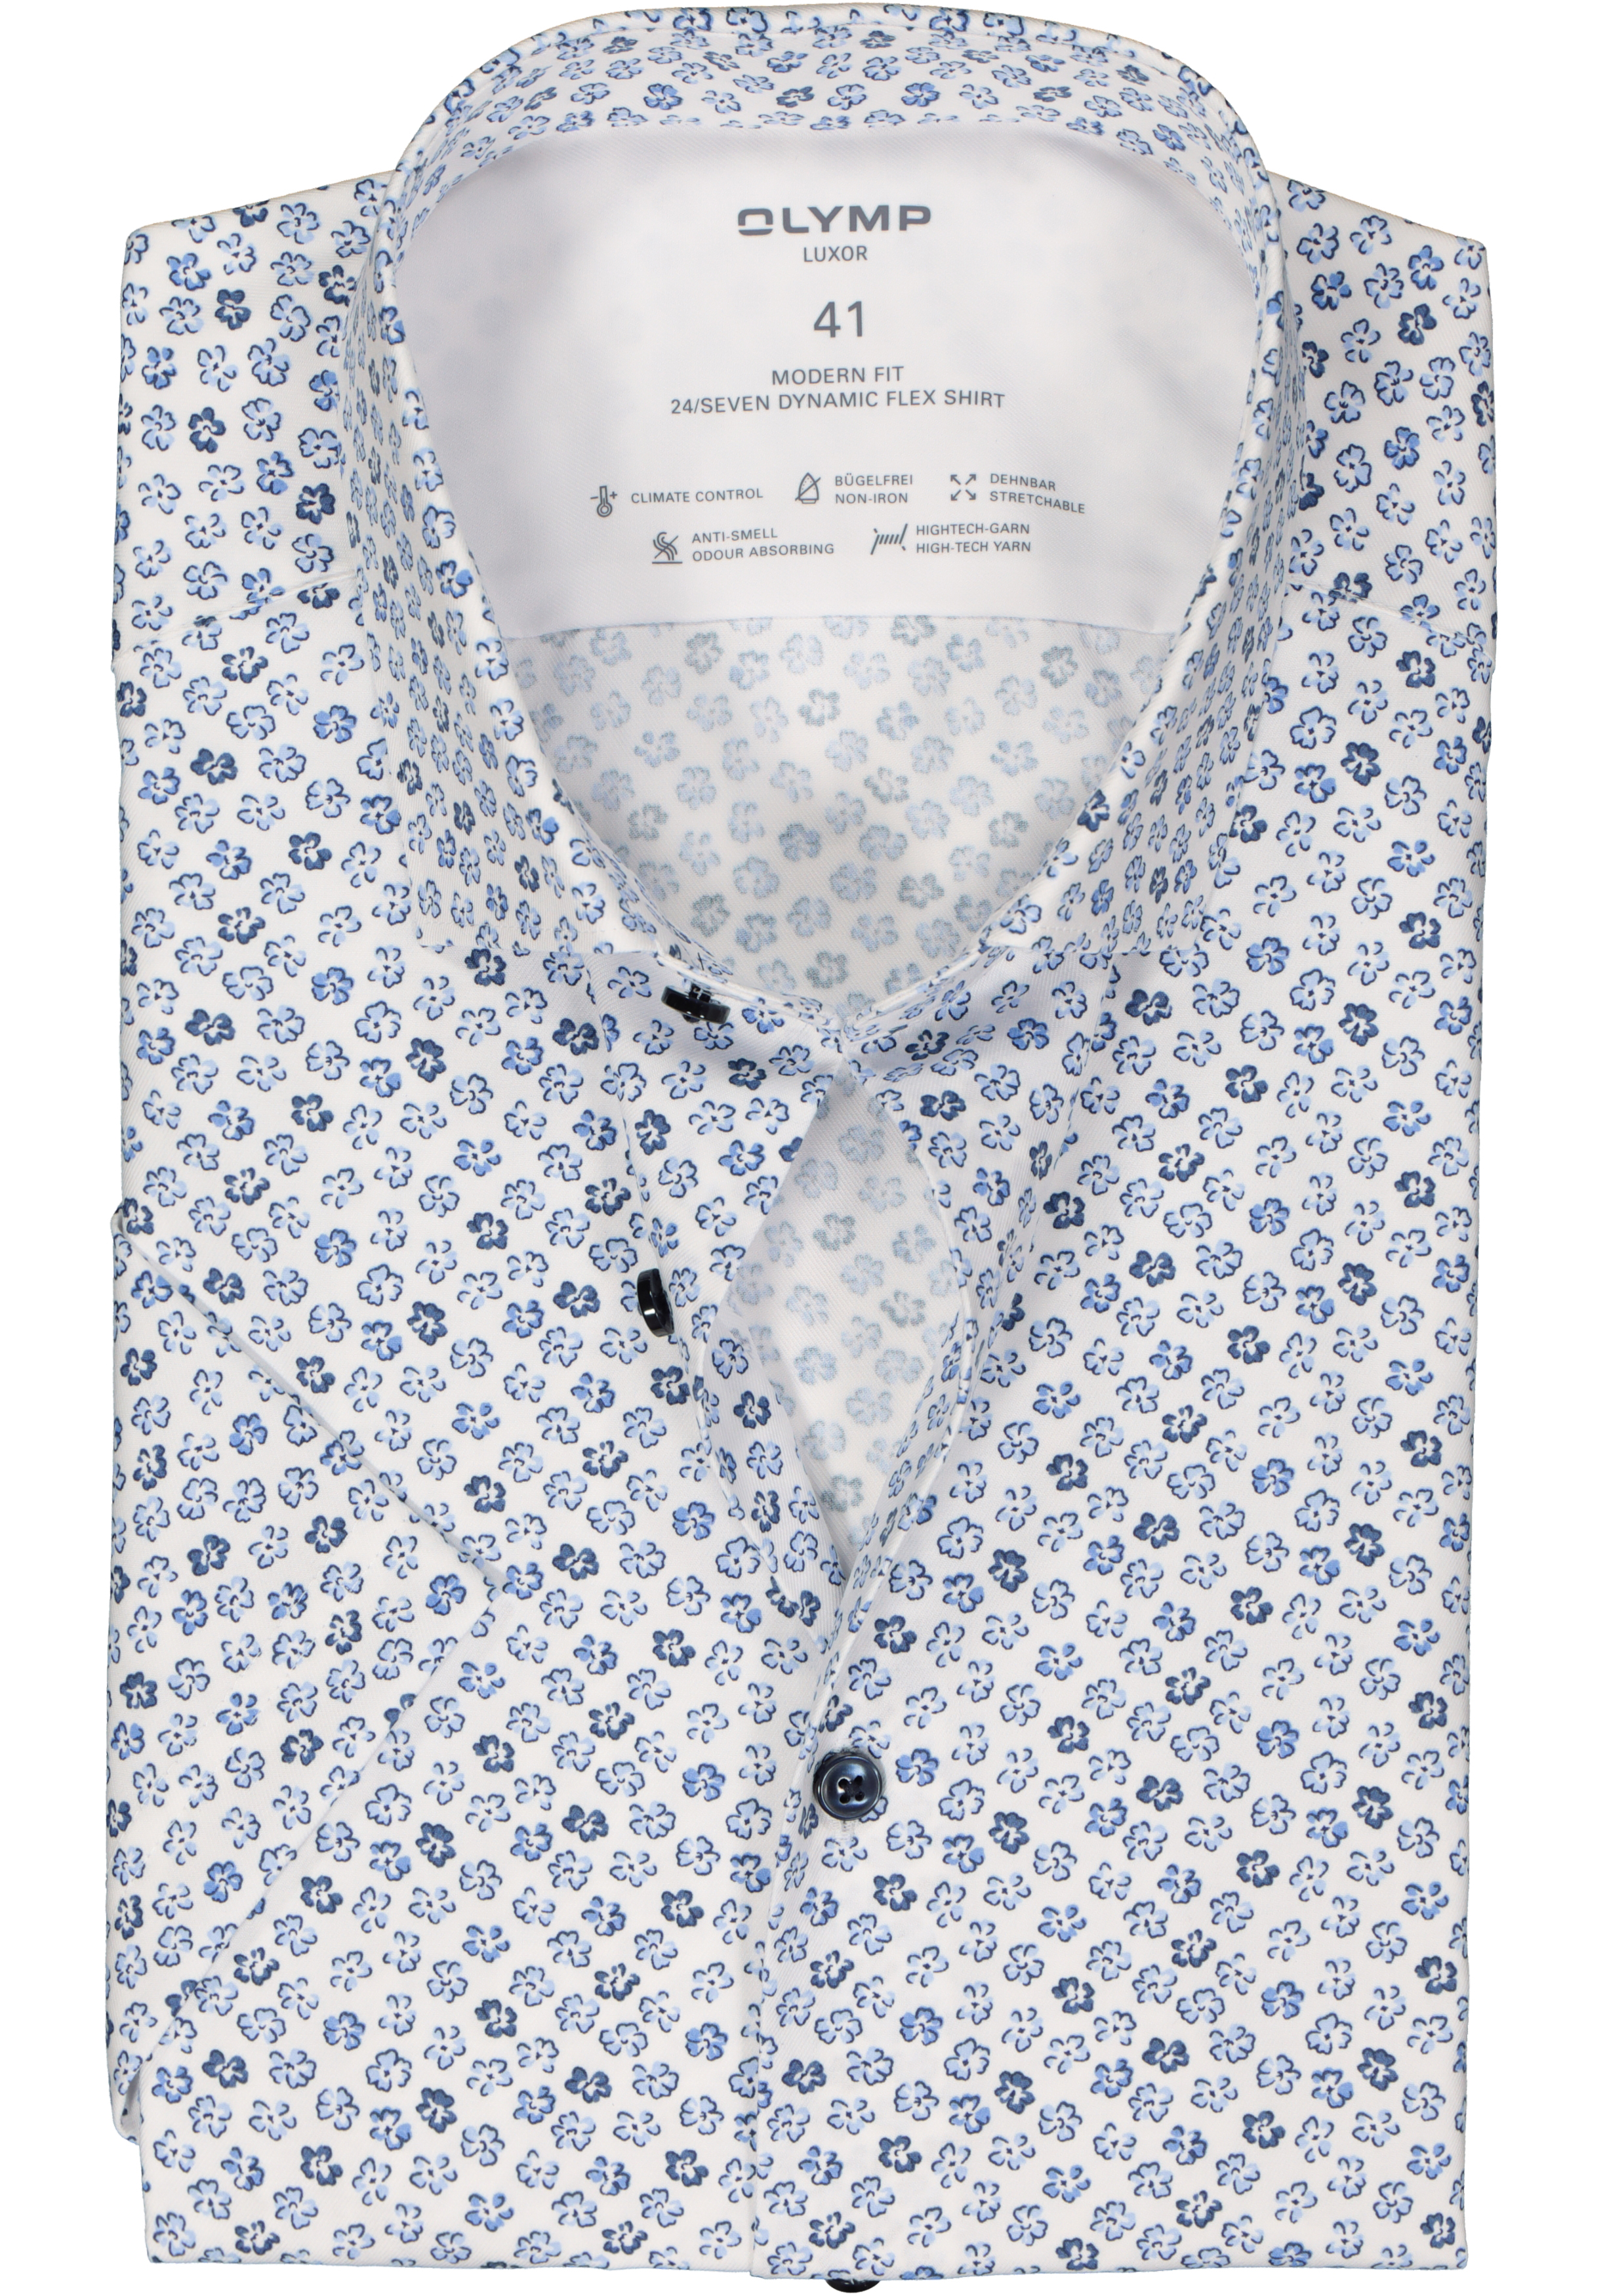 OLYMP 24/7 modern fit overhemd, korte mouw, dynamic flex, blauw met wit bloemen dessin